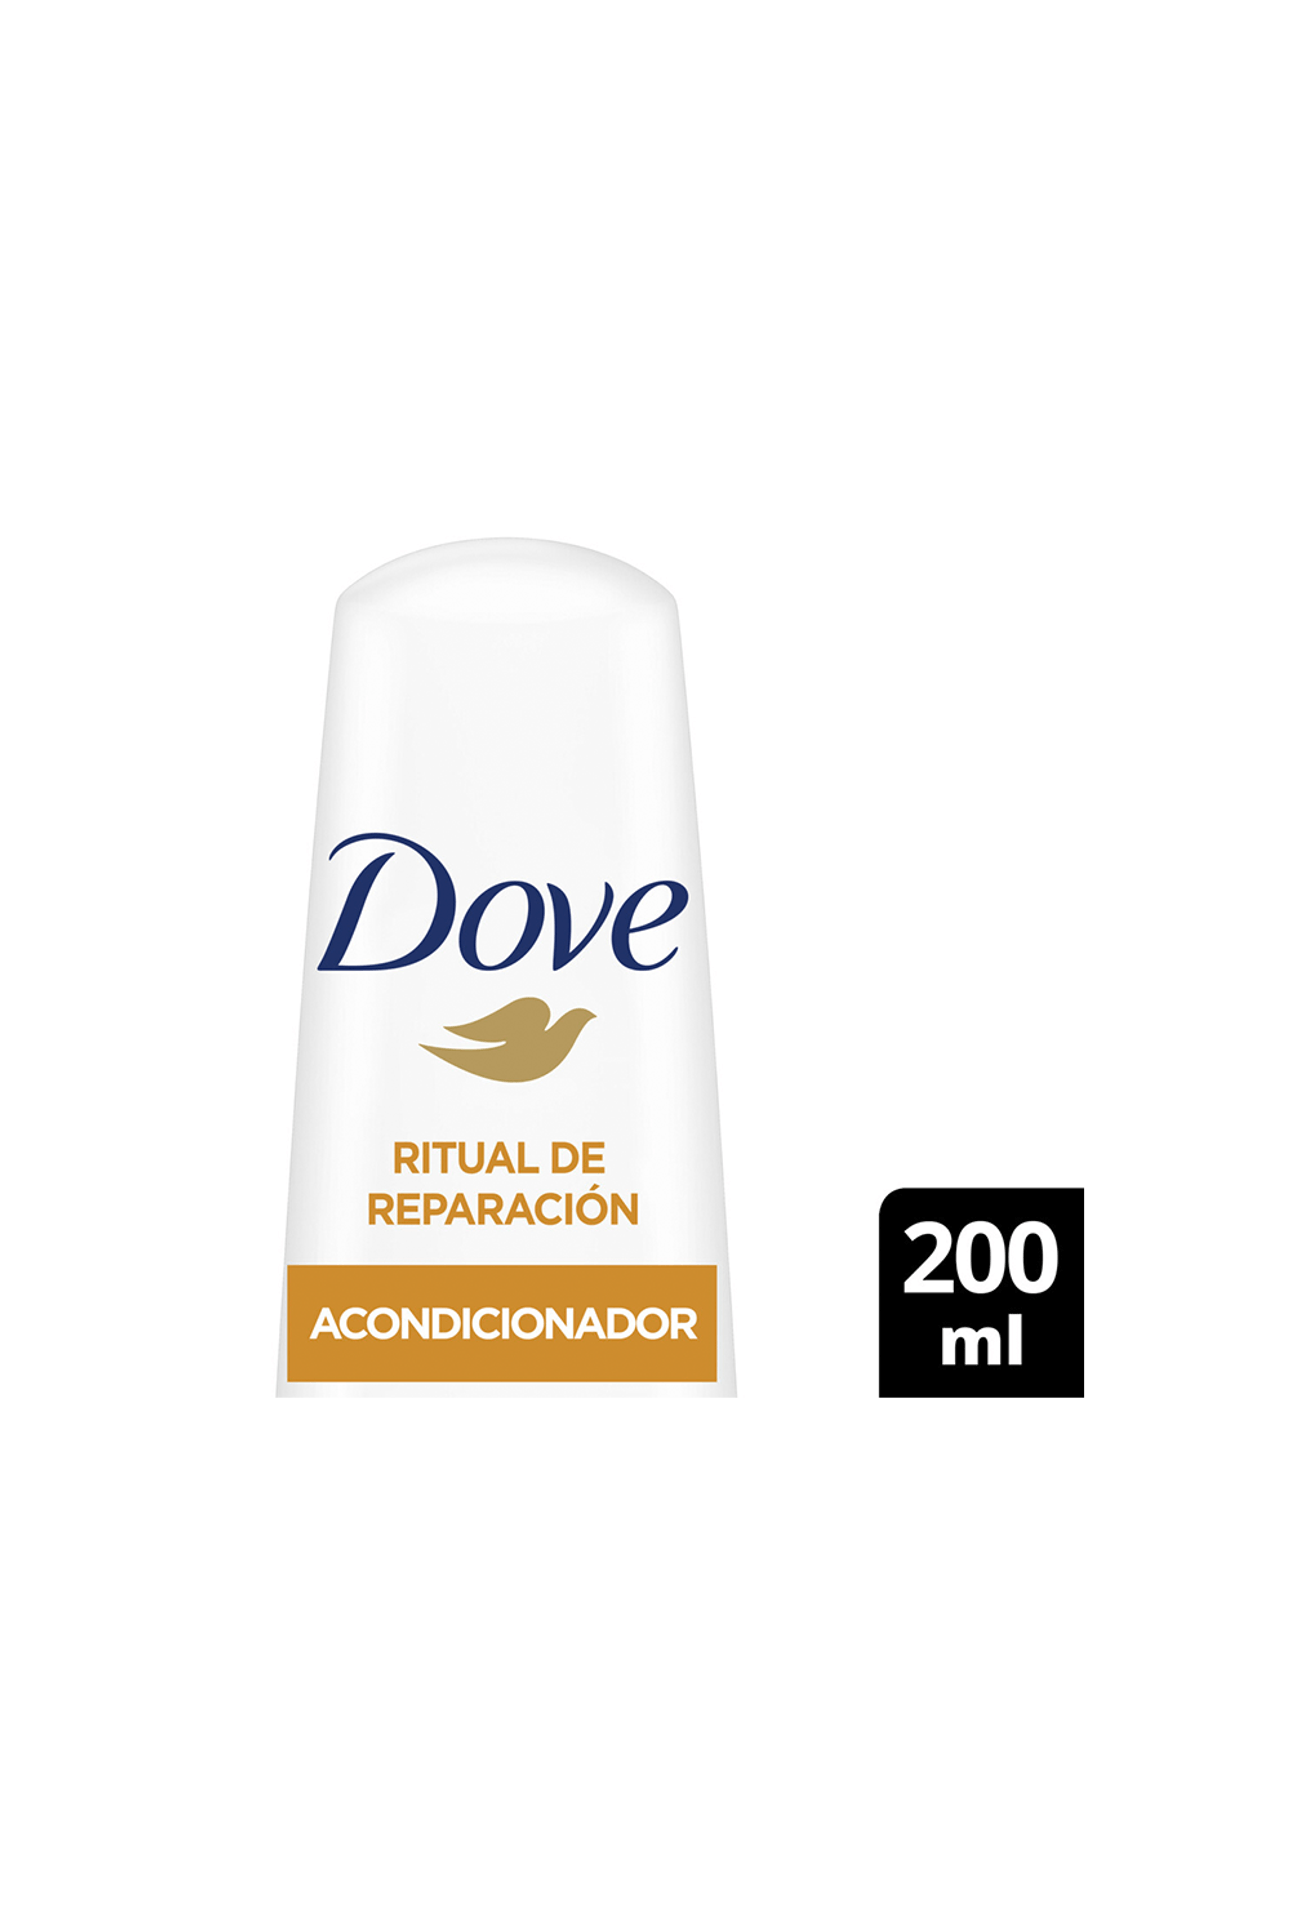 Dove-Acondicionador-Dove-Ritual-De-Reparacion-Coco-x-200ml-7791293047041_img1